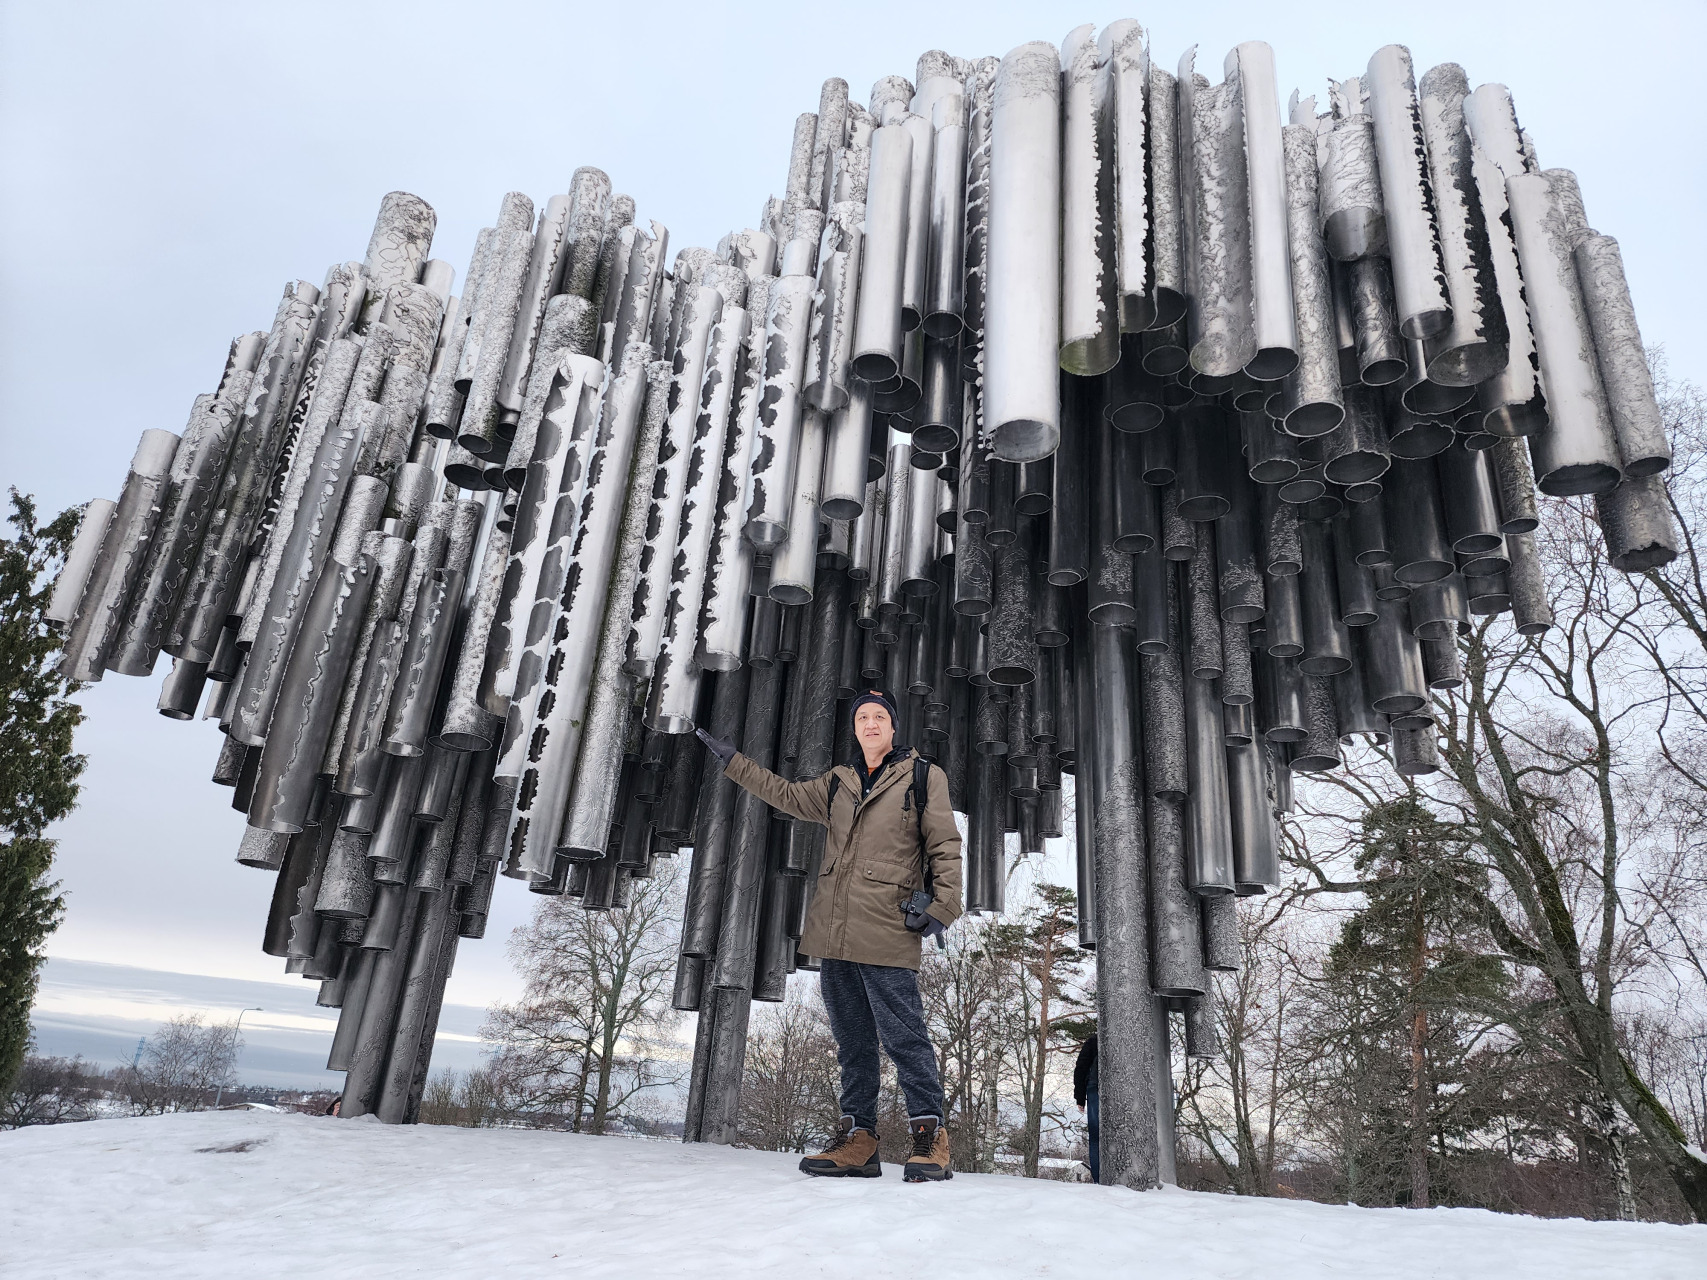 ■西贝柳斯纪念碑（Sibelius Monument）是芬兰人最自豪的城市雕塑作品。纪念碑位于海边西贝柳斯公园青松翠柏环抱之中，由数百根银白色不锈钢管组成，外形看起来就像一架巨型管风琴，是为了致敬芬兰著名作曲家Jean Sibelius的伟大音乐而修建的，根据记载，他的音乐作品节奏慷慨激昂、激励人心，在当时的社会既具有疗愈力量，也掀起了爱国情操，因而也被芬兰人誉为唤醒国魂的英雄。